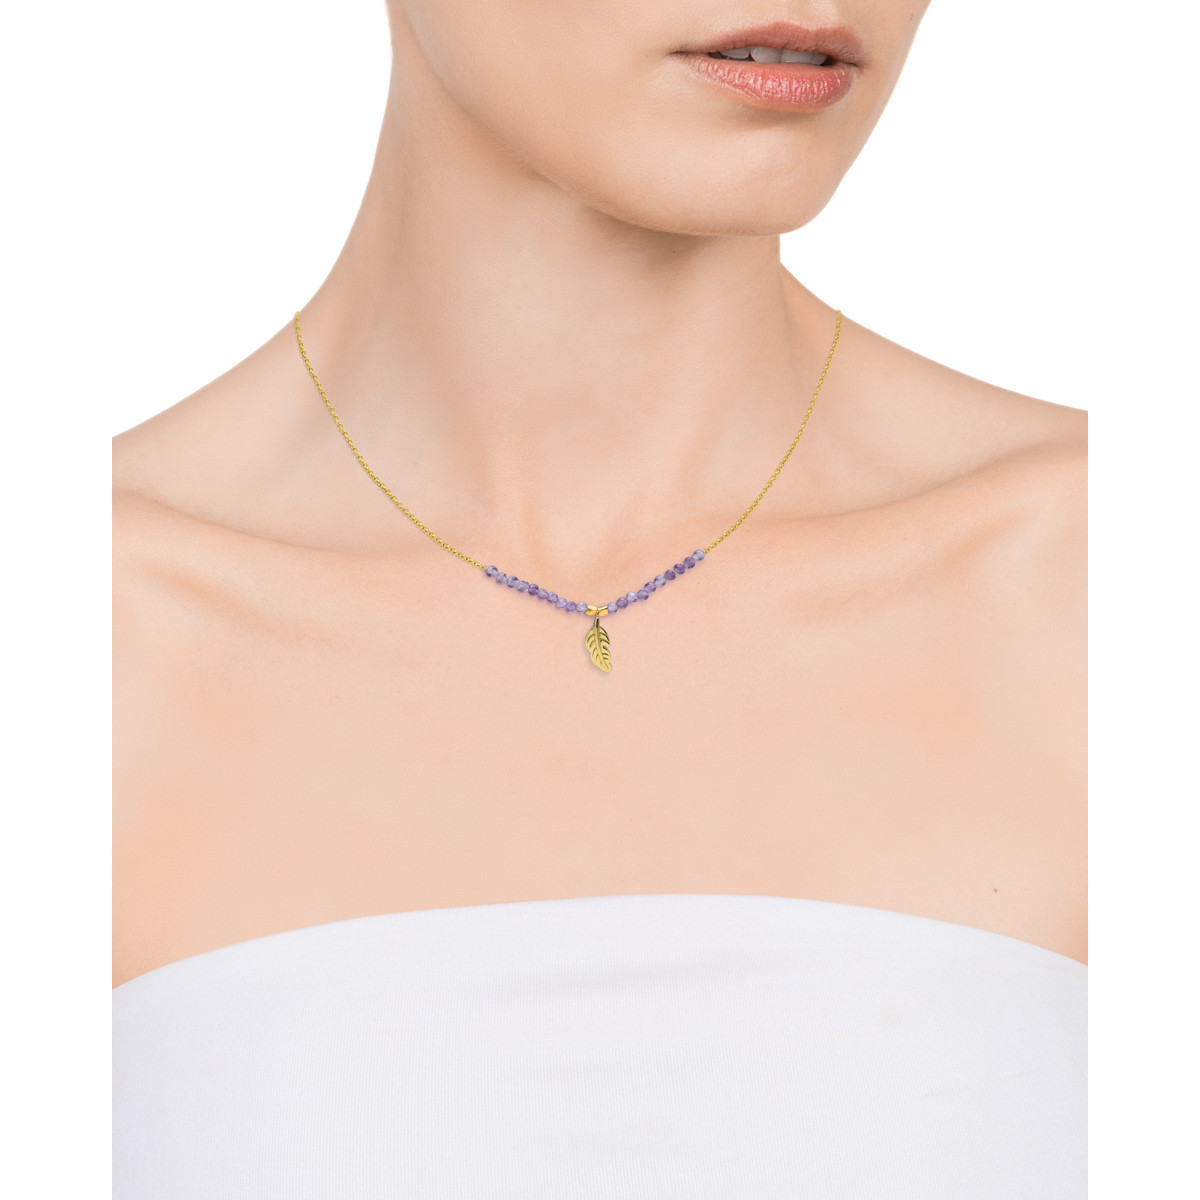 Collar Viceroy Trend de plata de ley 925 bañada en oro la cadena tiene 20 piedras naturales de amatista en color morado y pieza